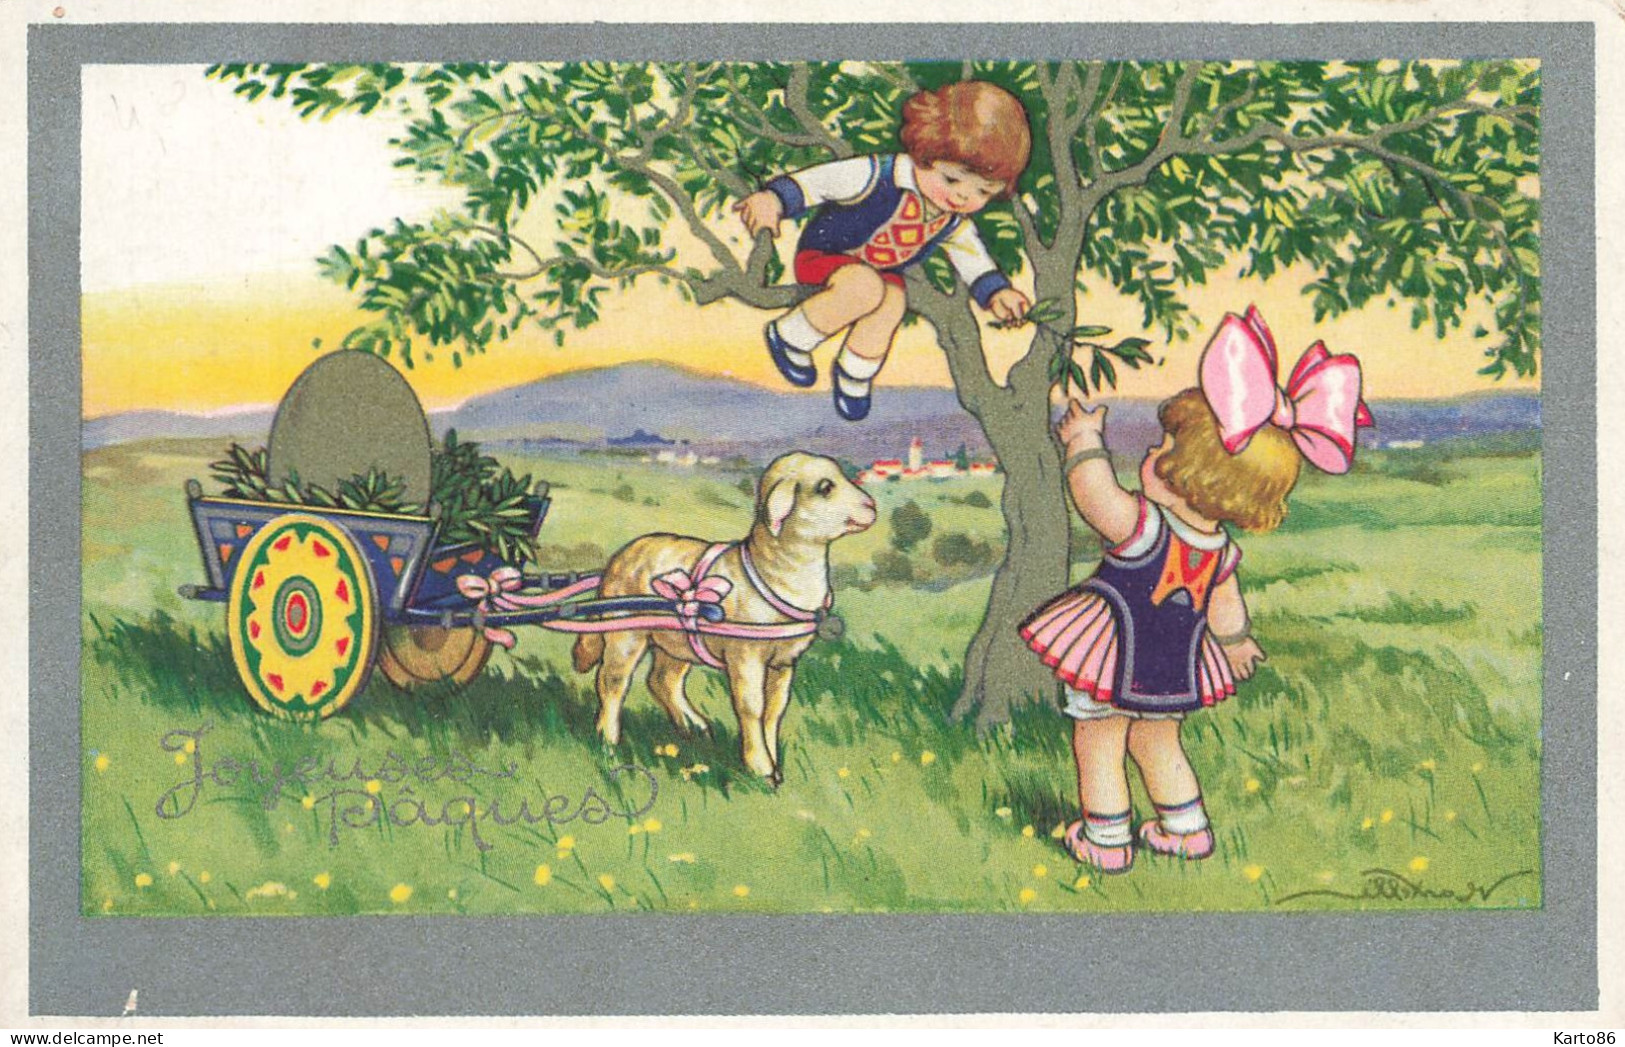 Joyeuses Pâques * CPA Illustrateur V. CASTELLI Castelli * Attelage Mouton Oeuf Egg Enfants * N°3569 - Castelli